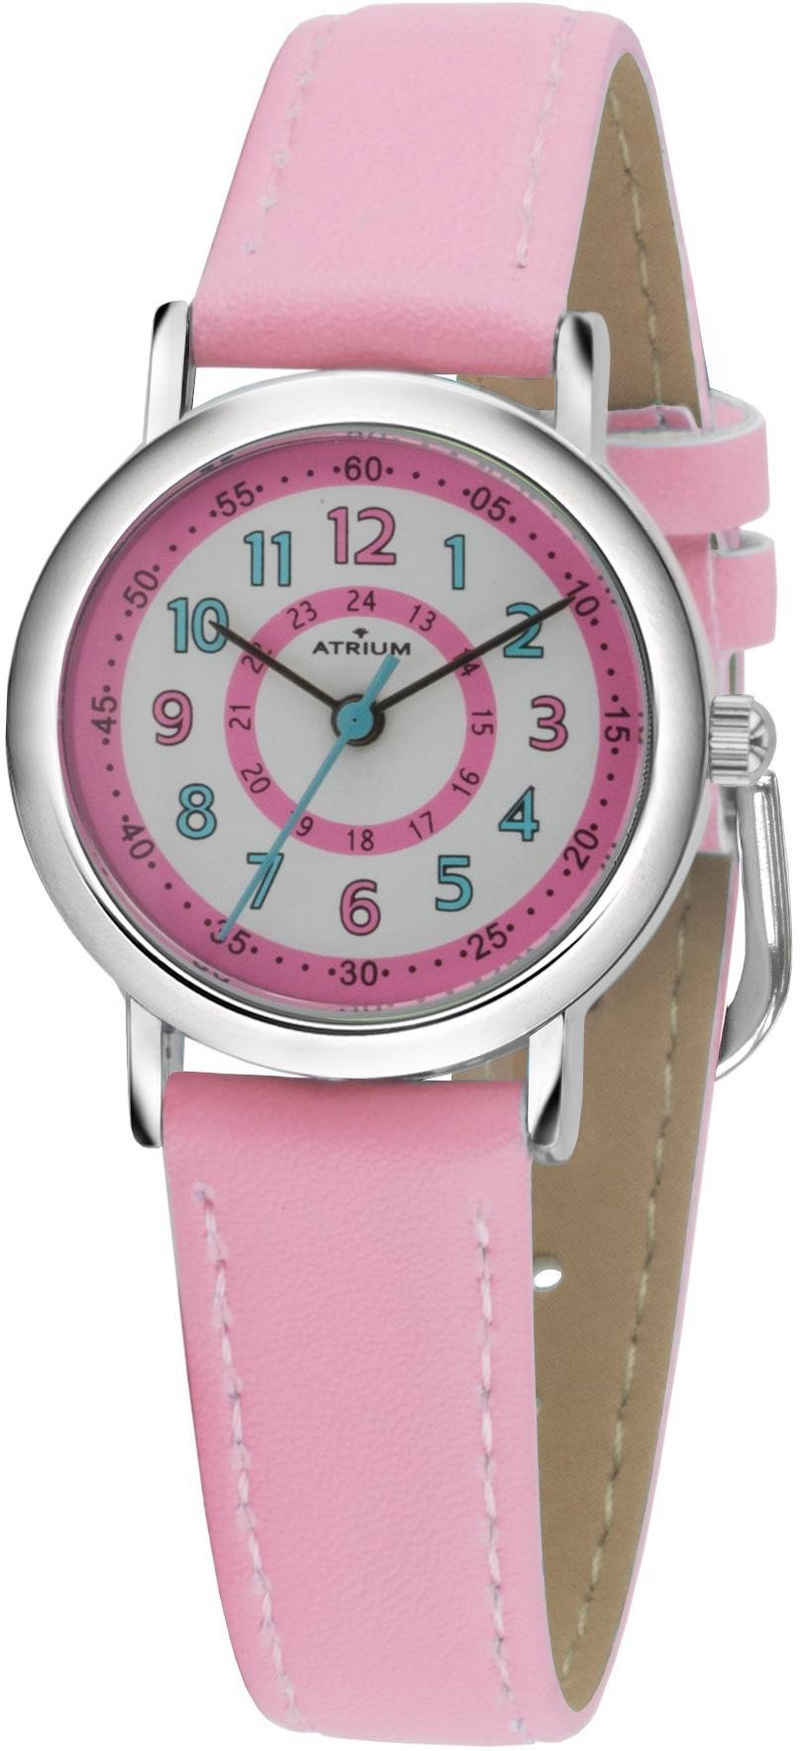 Atrium Quarzuhr A31-104, Armbanduhr, Kinderuhr, Mädchenenuhr, ideal auch als Geschenk